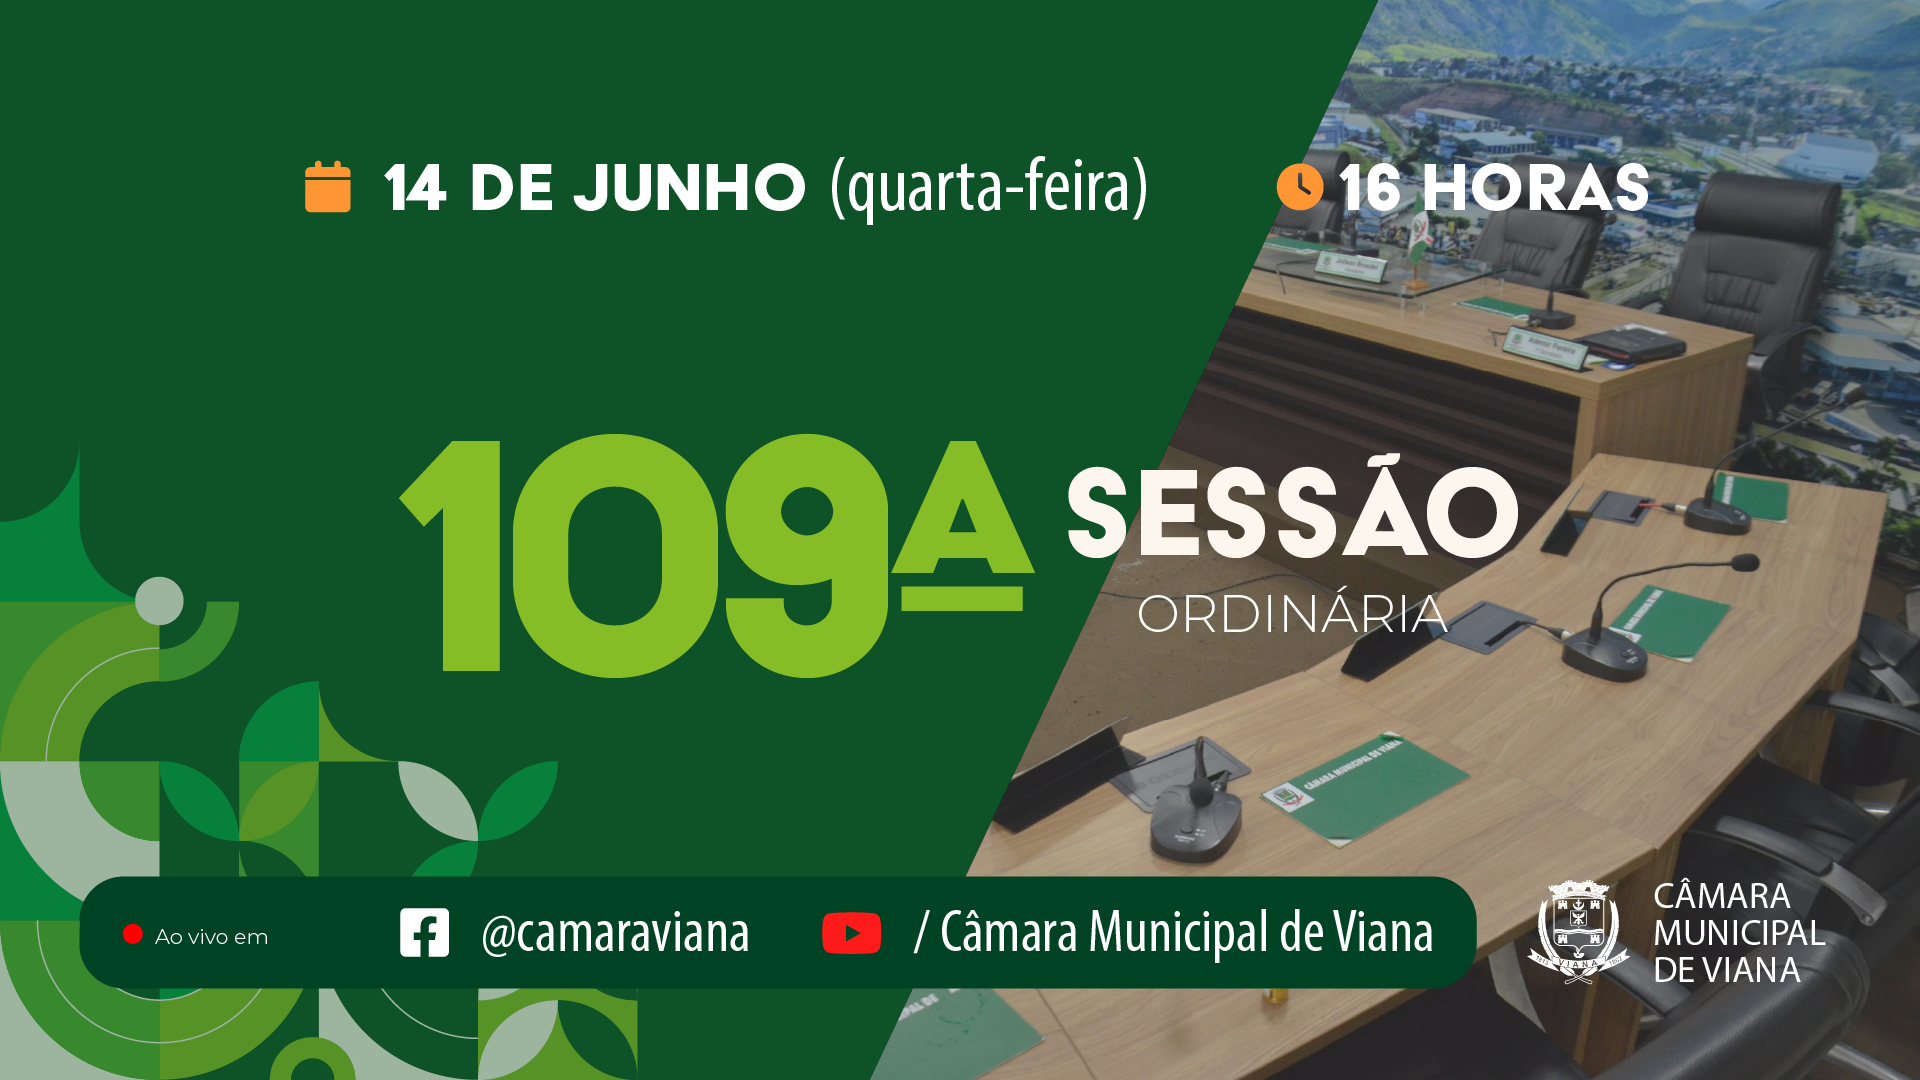 PAUTA DA CENTÉSIMA NONA (109ª) SESSÃO ORDINÁRIA